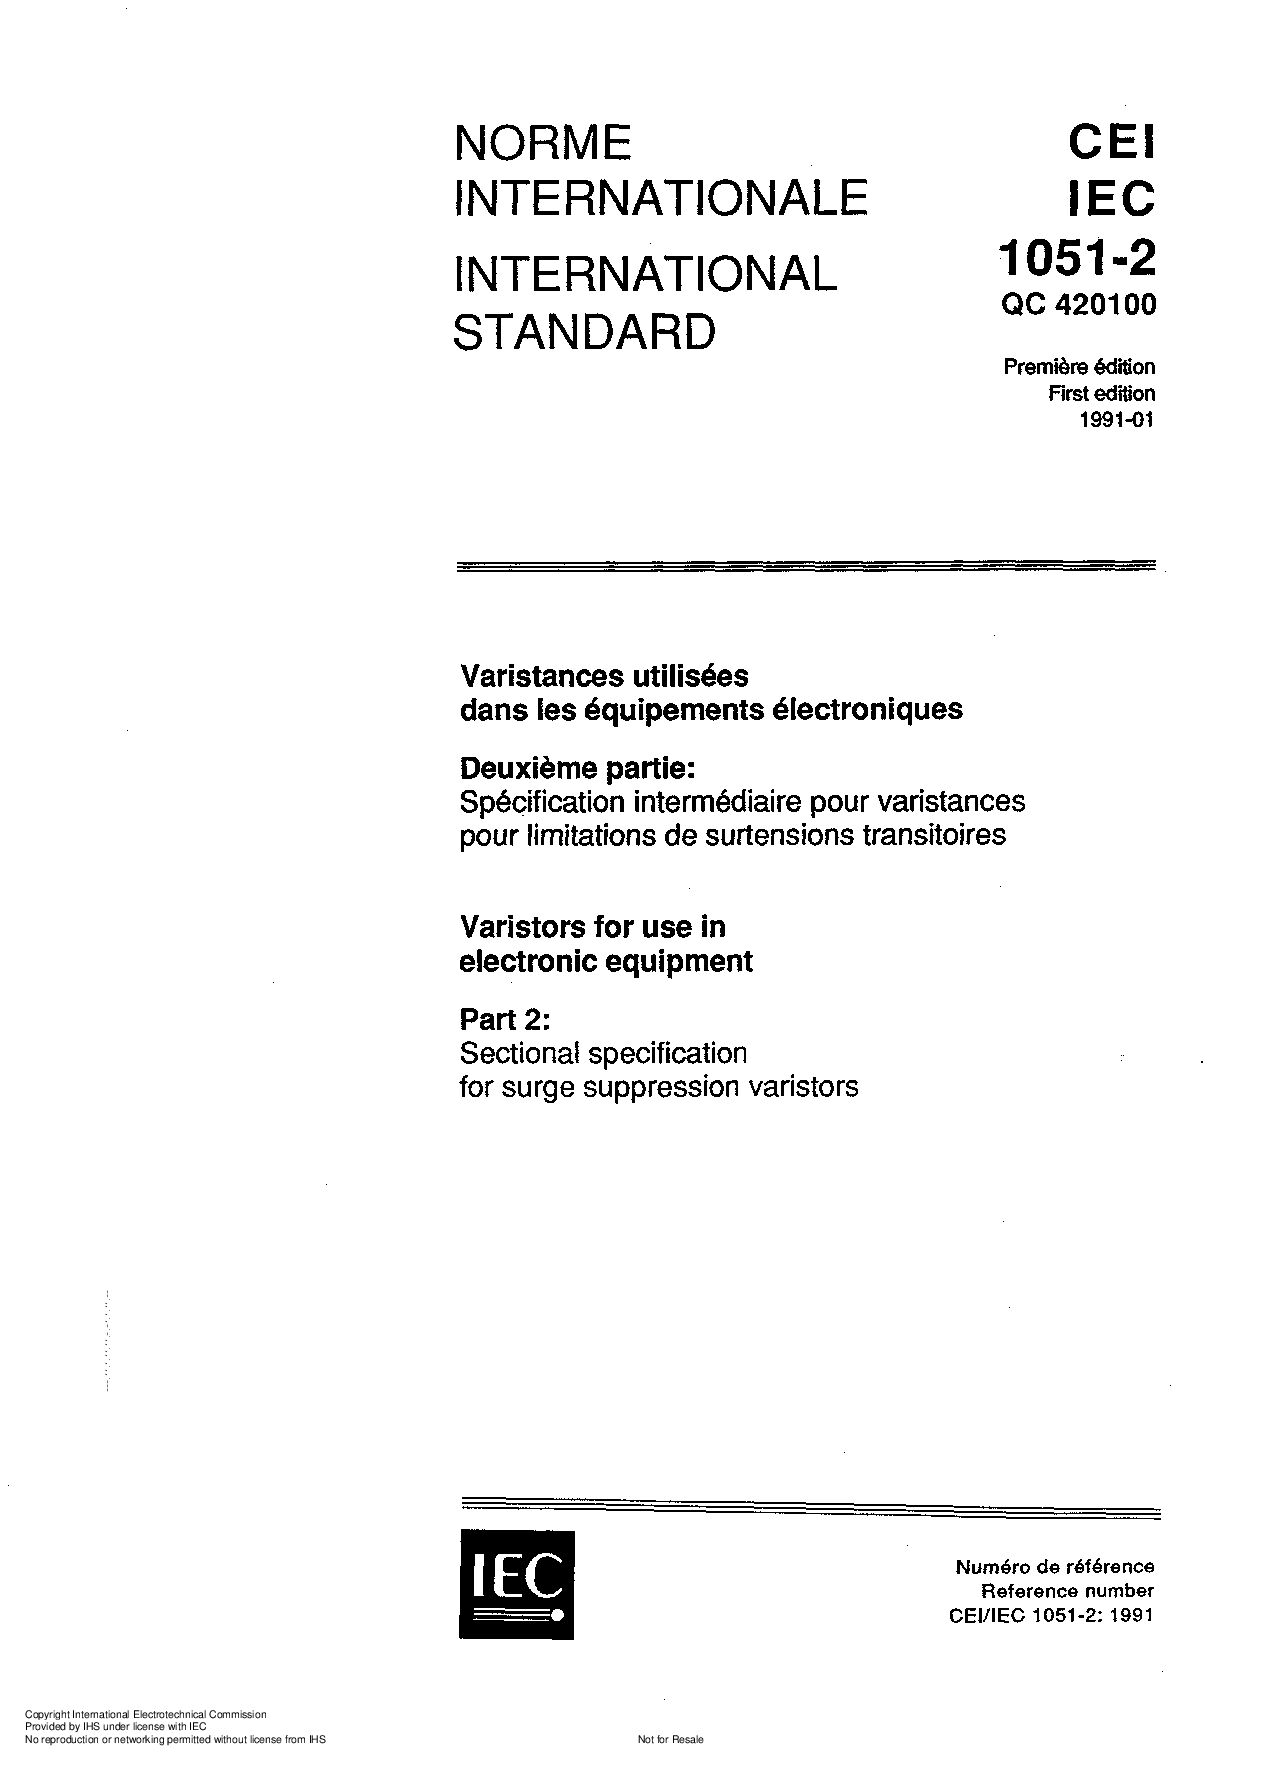 IEC 61051-2:1991